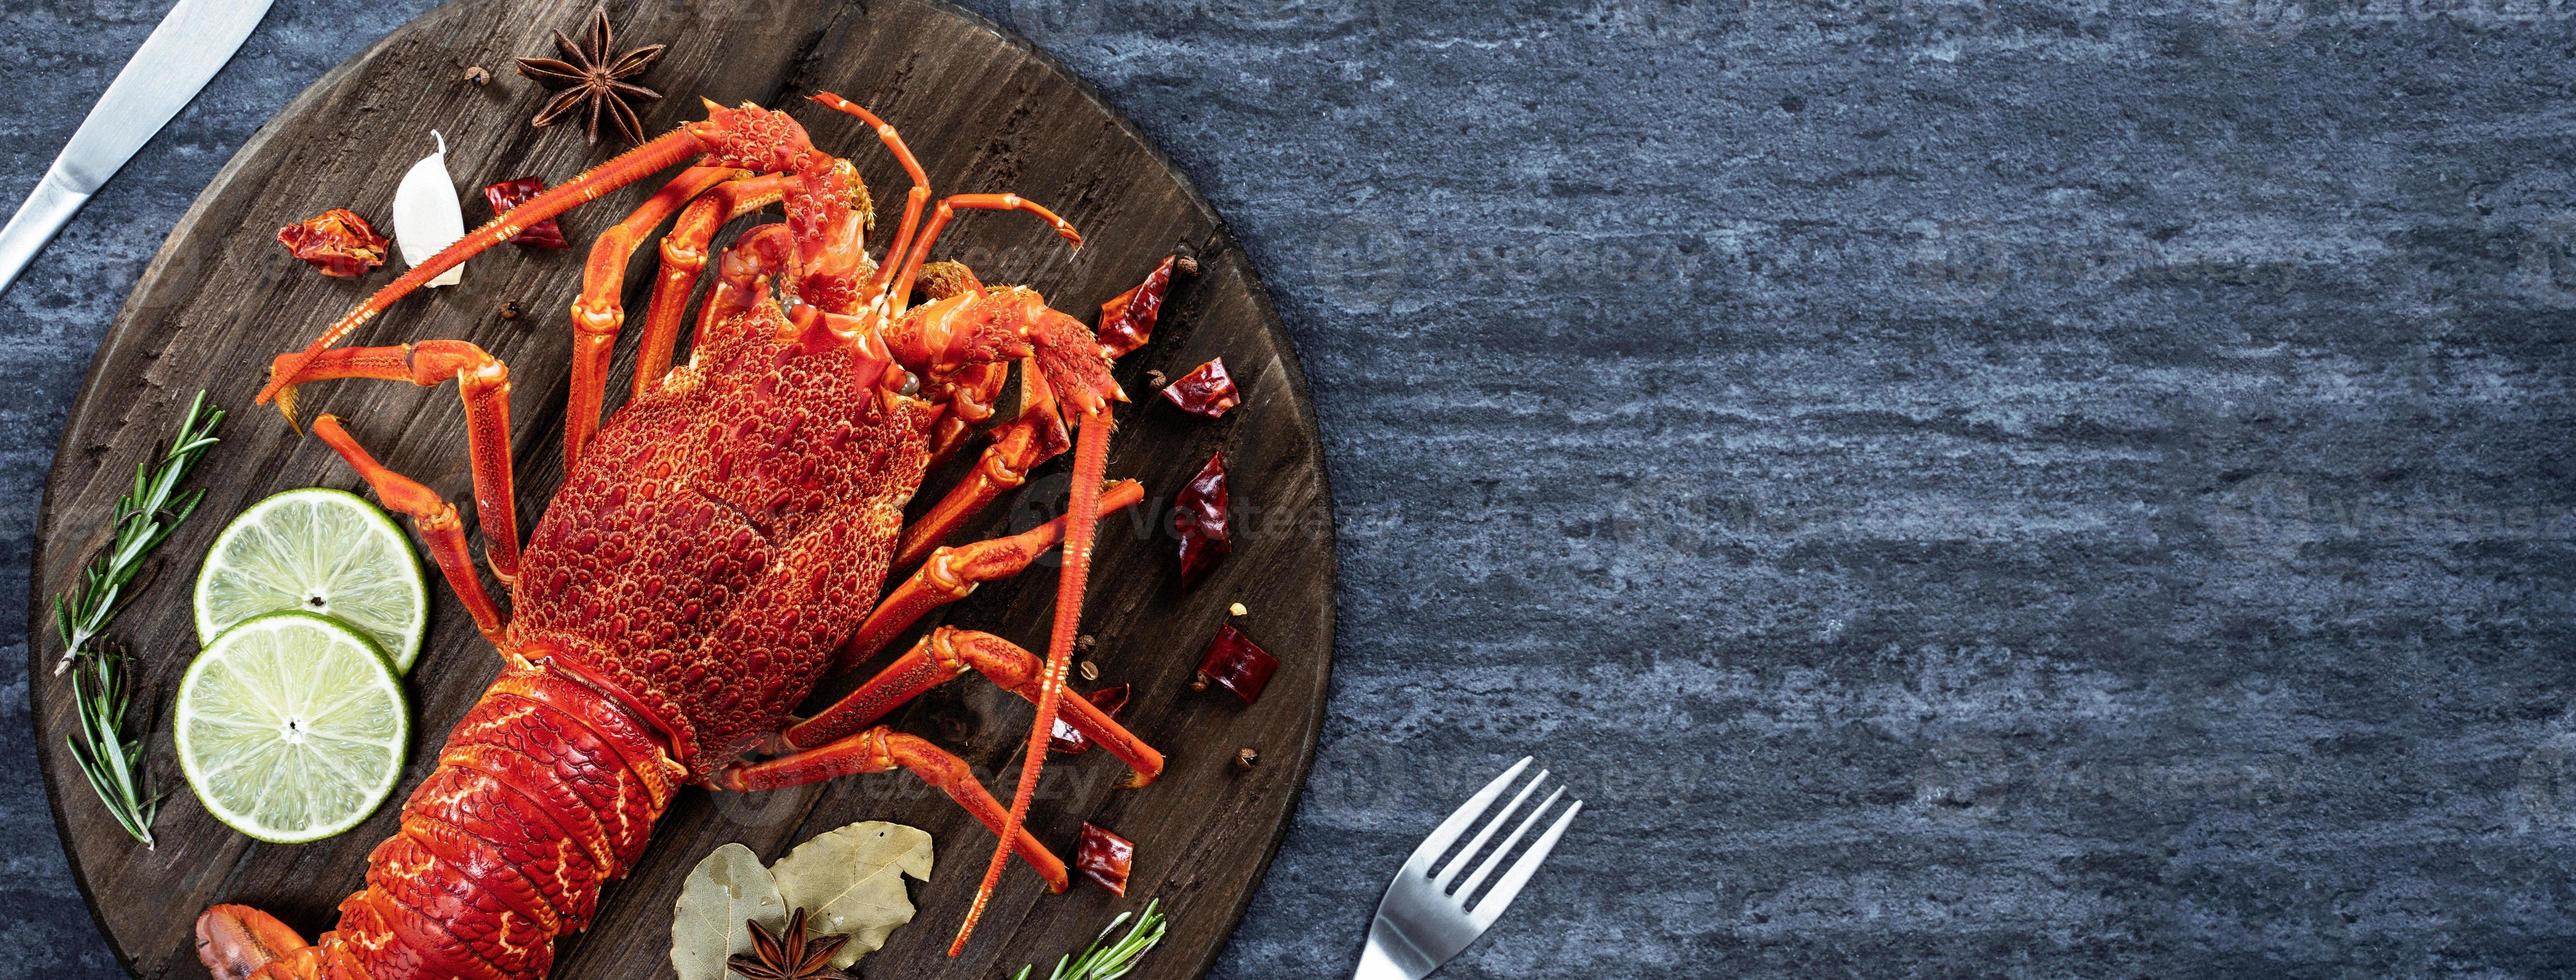 lagosta cozida cozida, deliciosa refeição de frutos do mar jantar com faca e garfo em fundo de ardósia de pedra preta, design de menu de restaurante, vista superior, sobrecarga foto